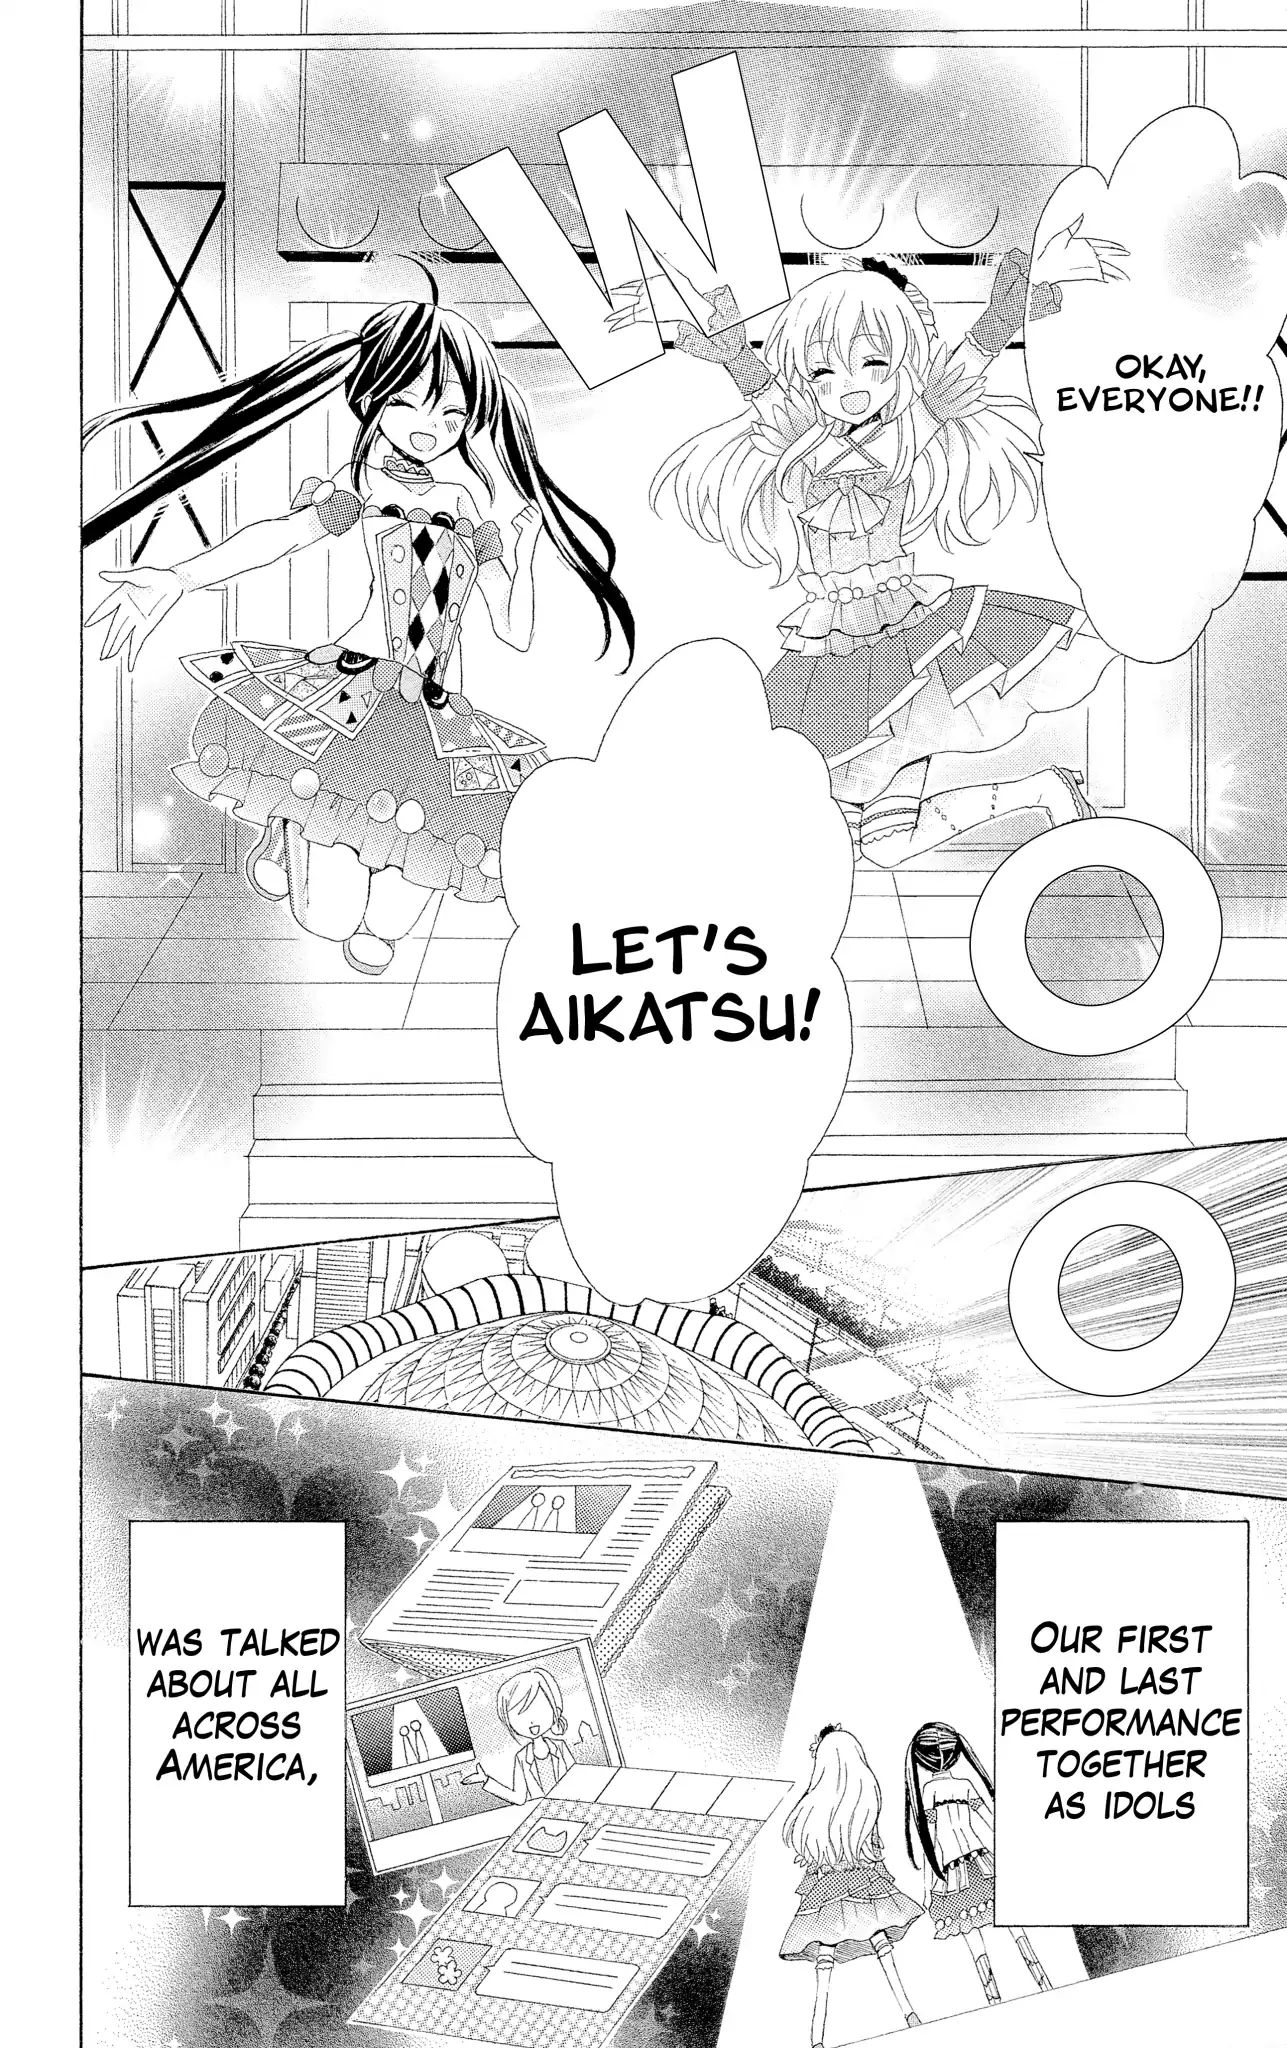 Aikatsu! Secret Story Vol.1 Chapter 5